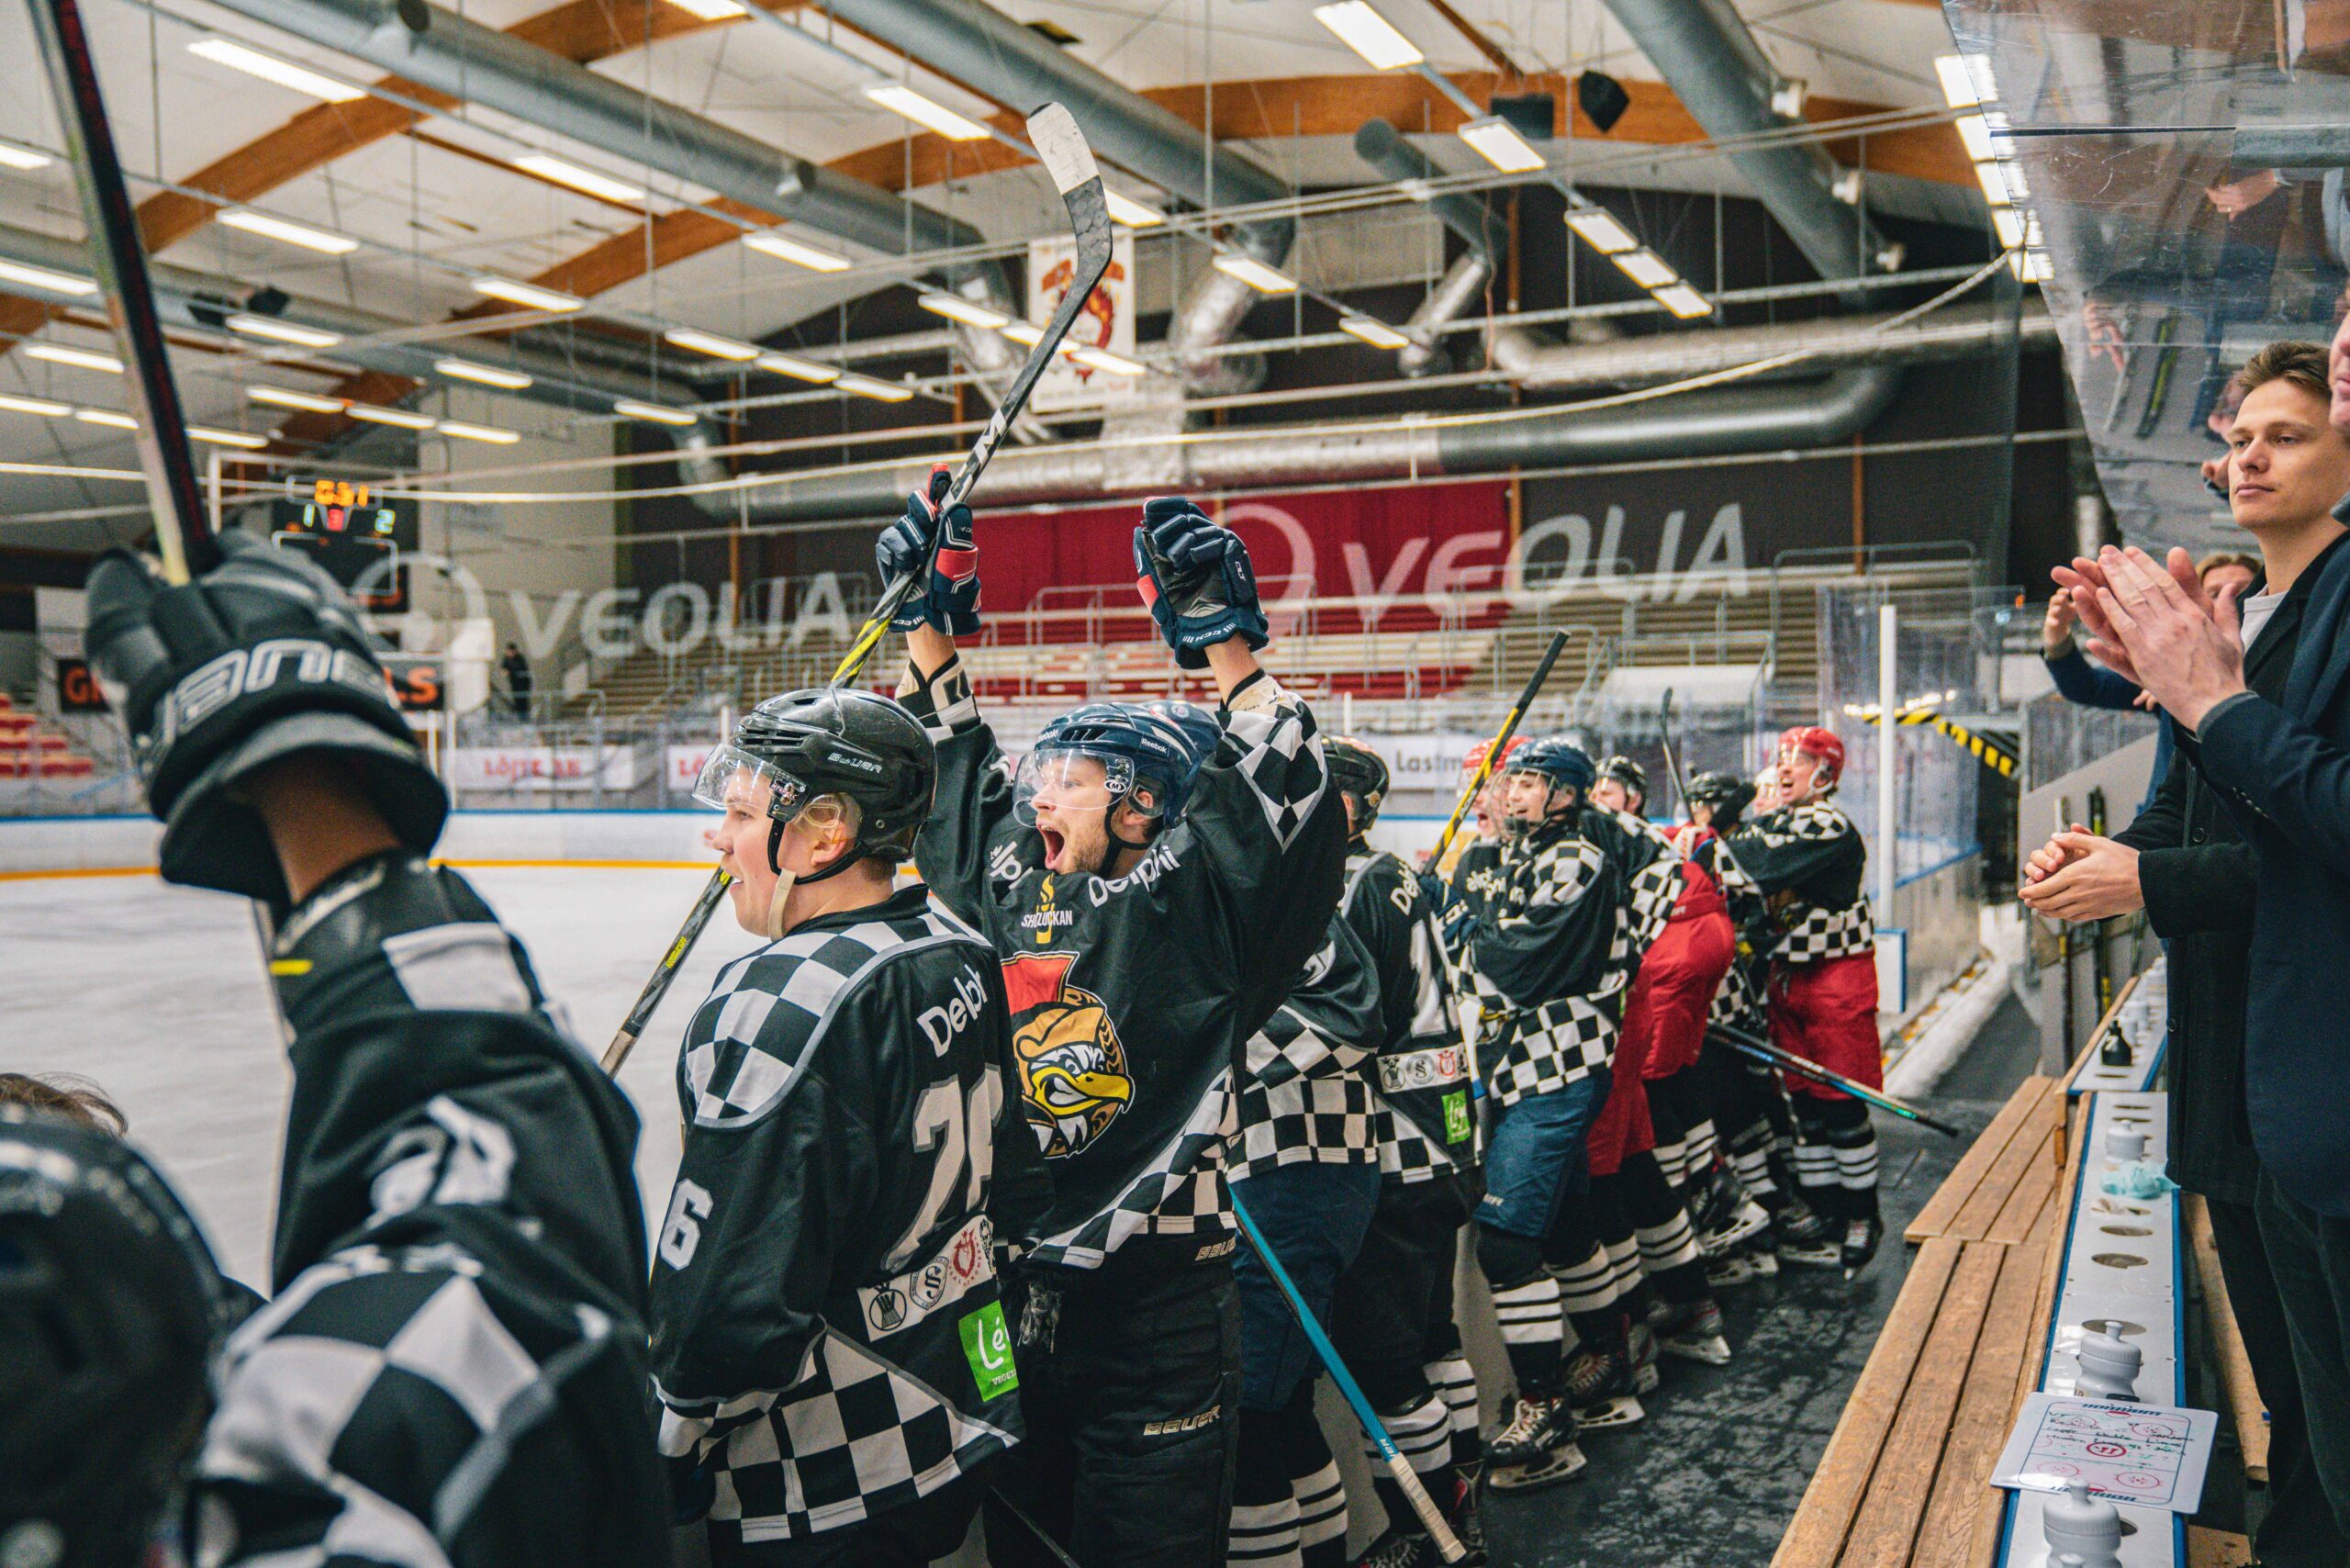 Uppsala University Hockey